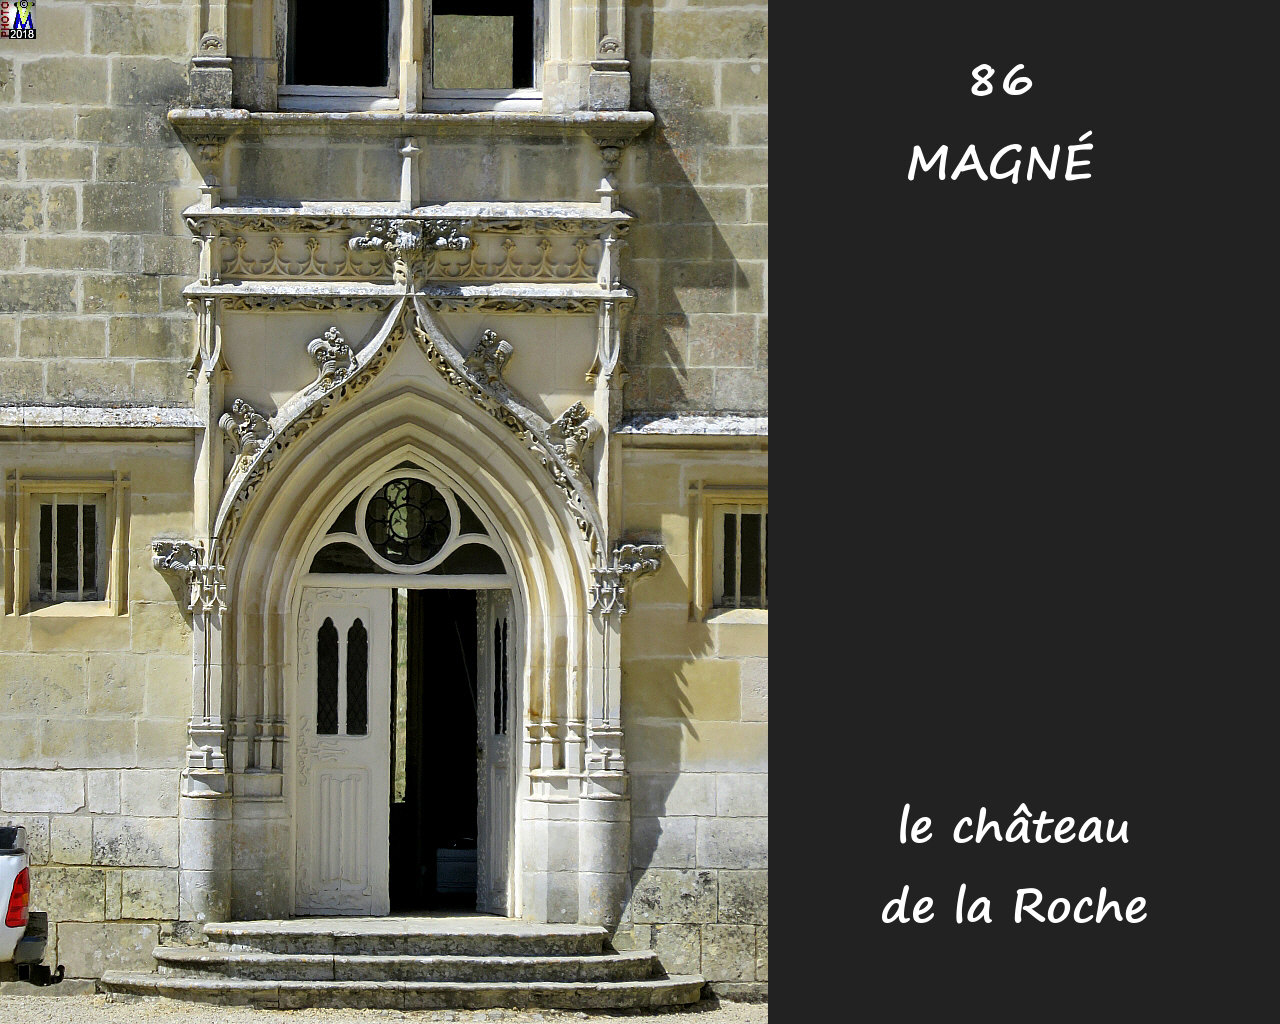 86MAGNE_chateau_1010.jpg